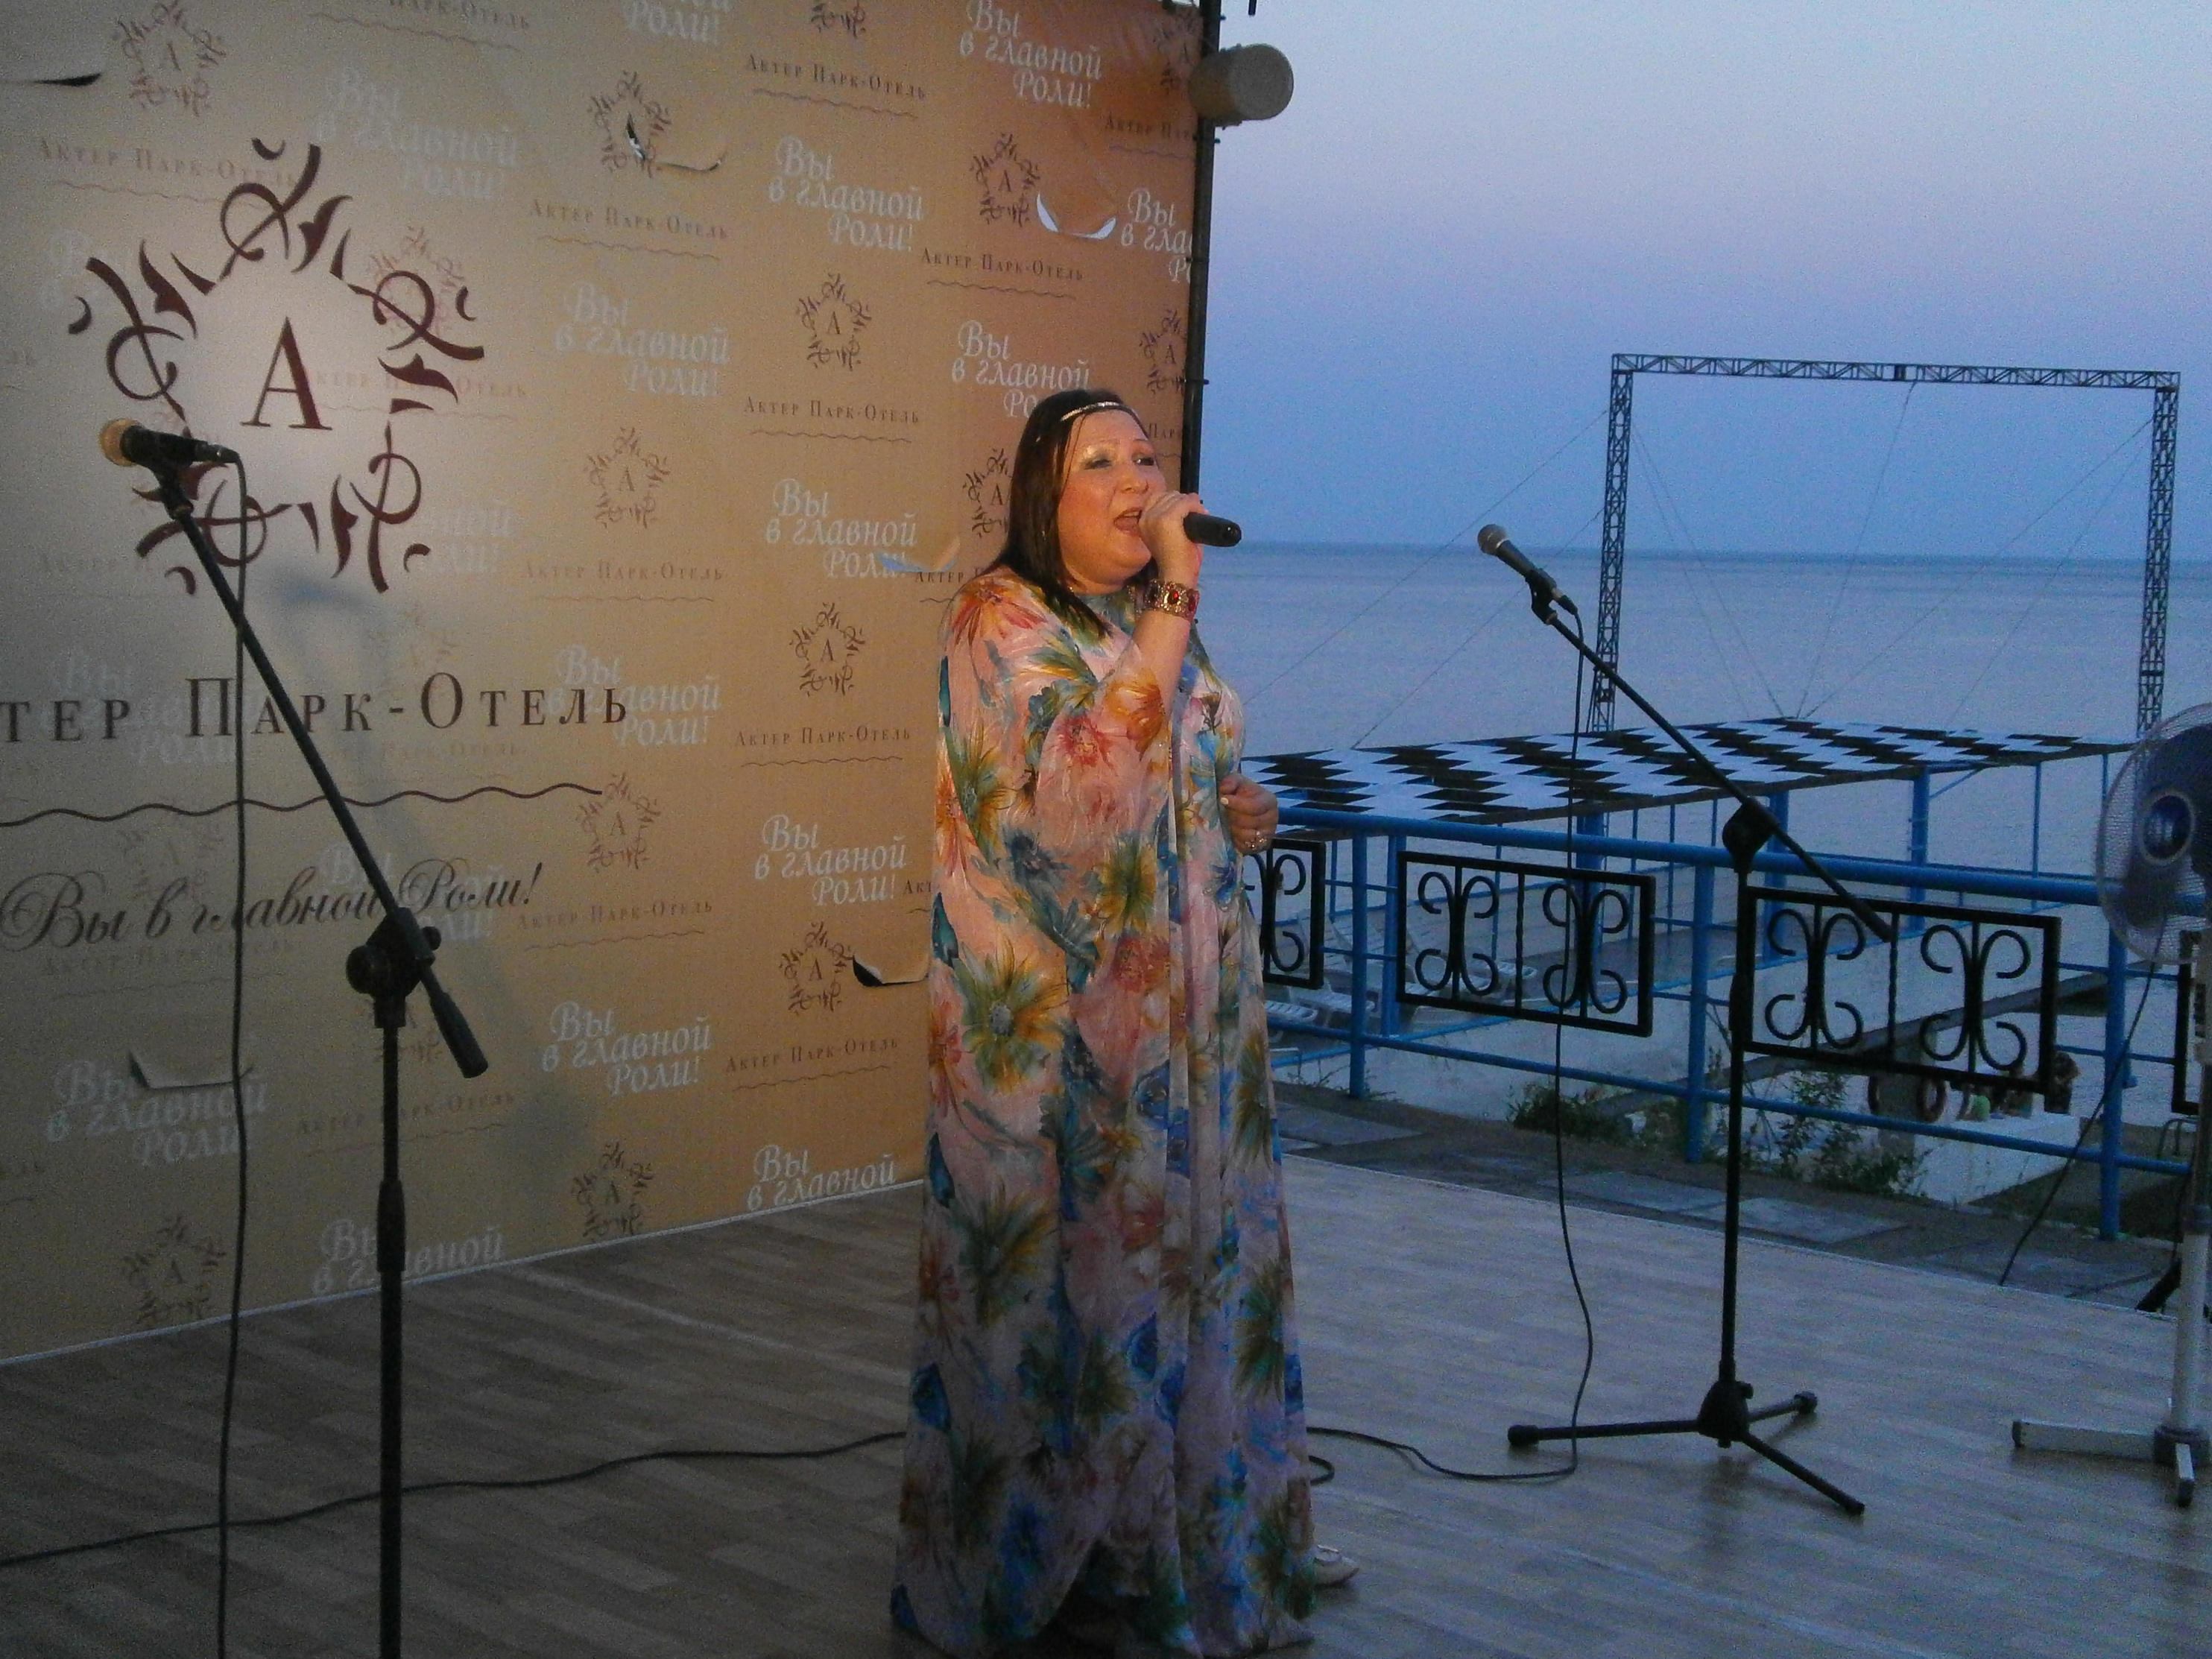 Светлана веданова в авторской программе "За секретными дверями" - "Актёр". Сцена на набережной (г. Ялта)